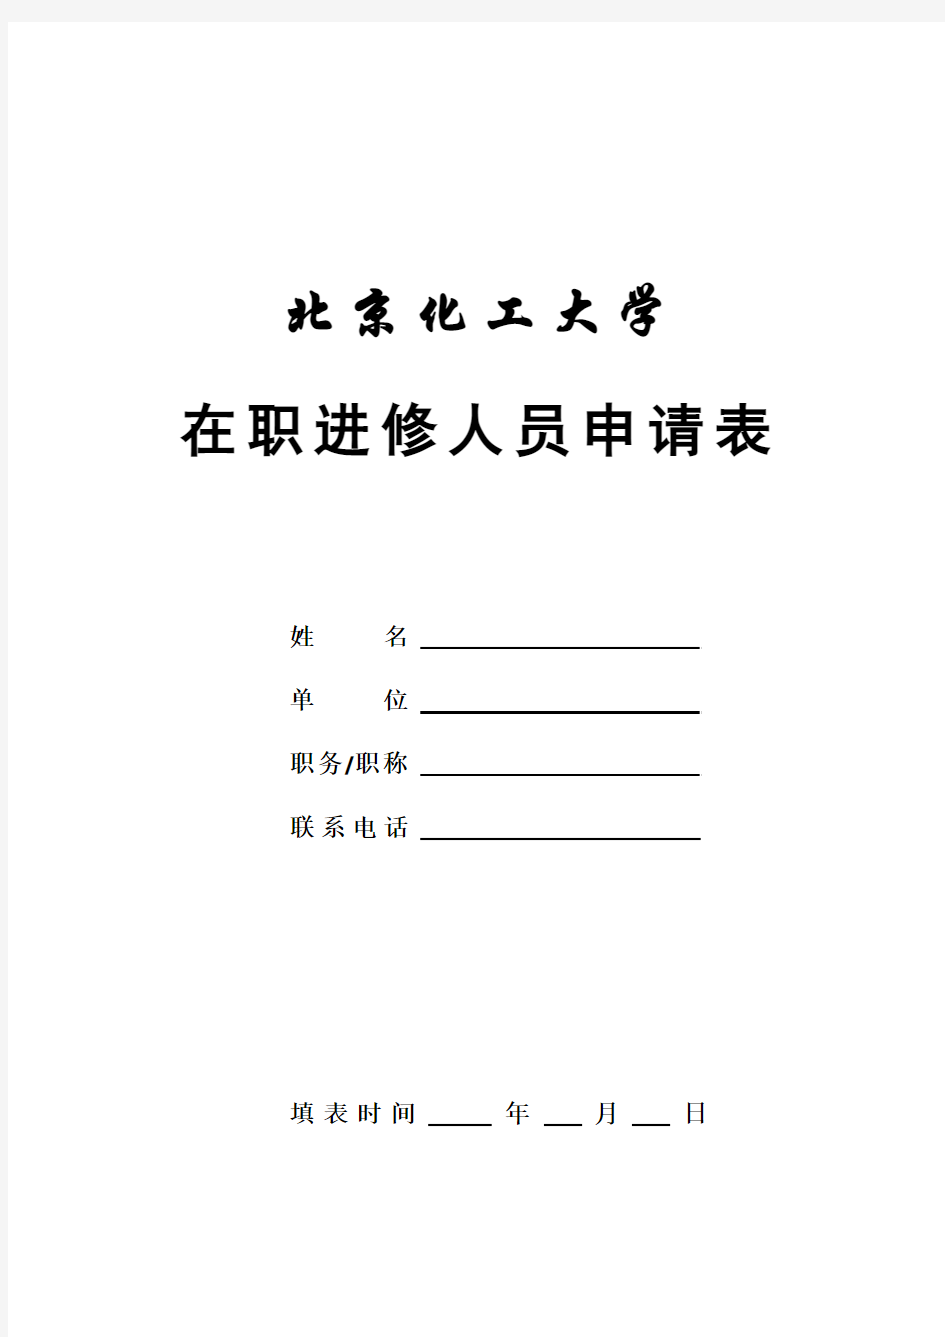 国内访问学者申请表-北京化工大学人事处